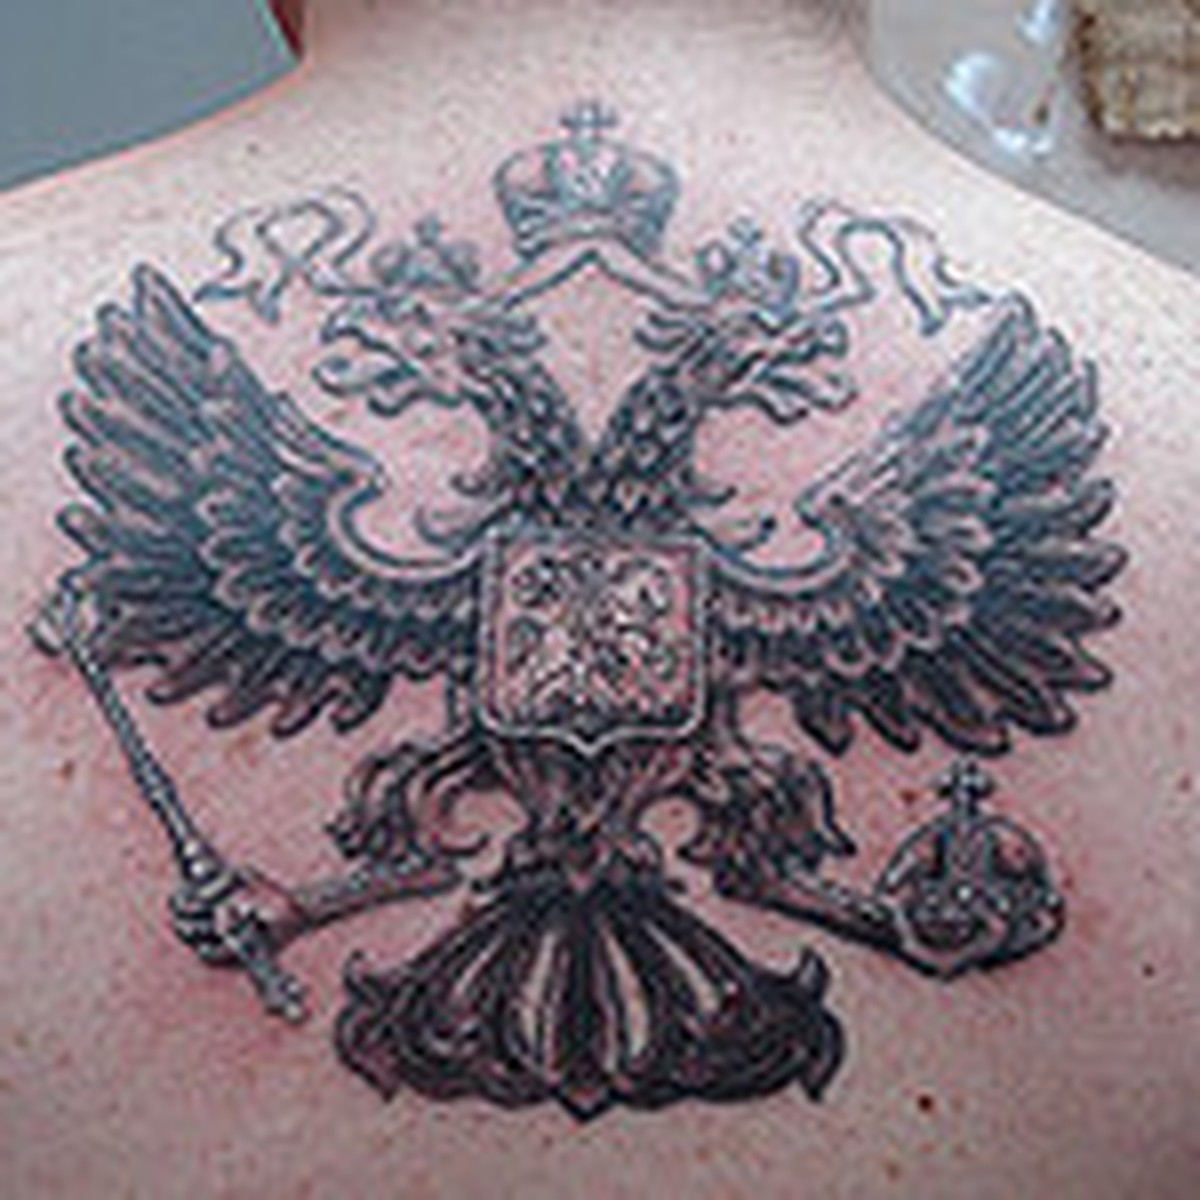 Суд оштрафовал мужчину на 40 тысяч рублей за татуировку с украинским Крымом